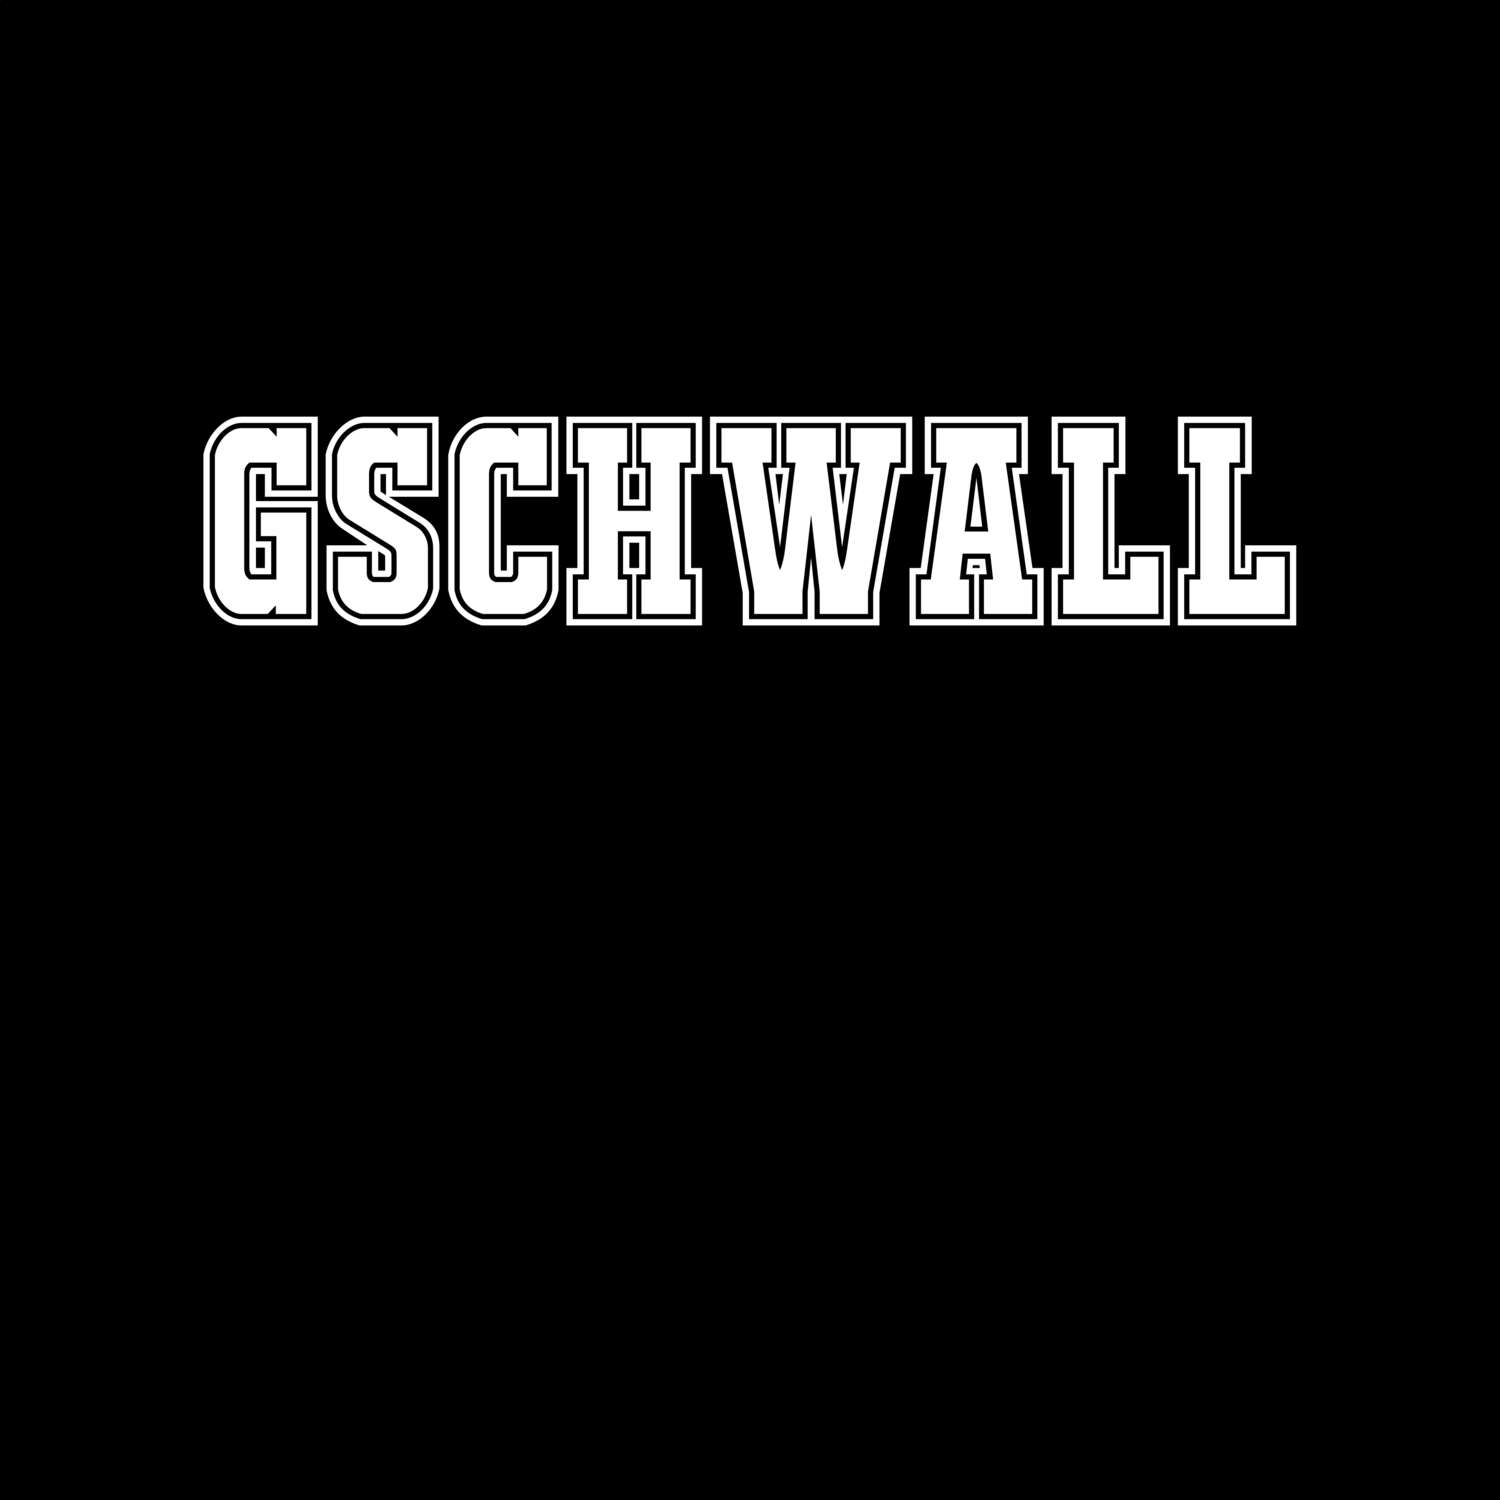 Gschwall T-Shirt »Classic«